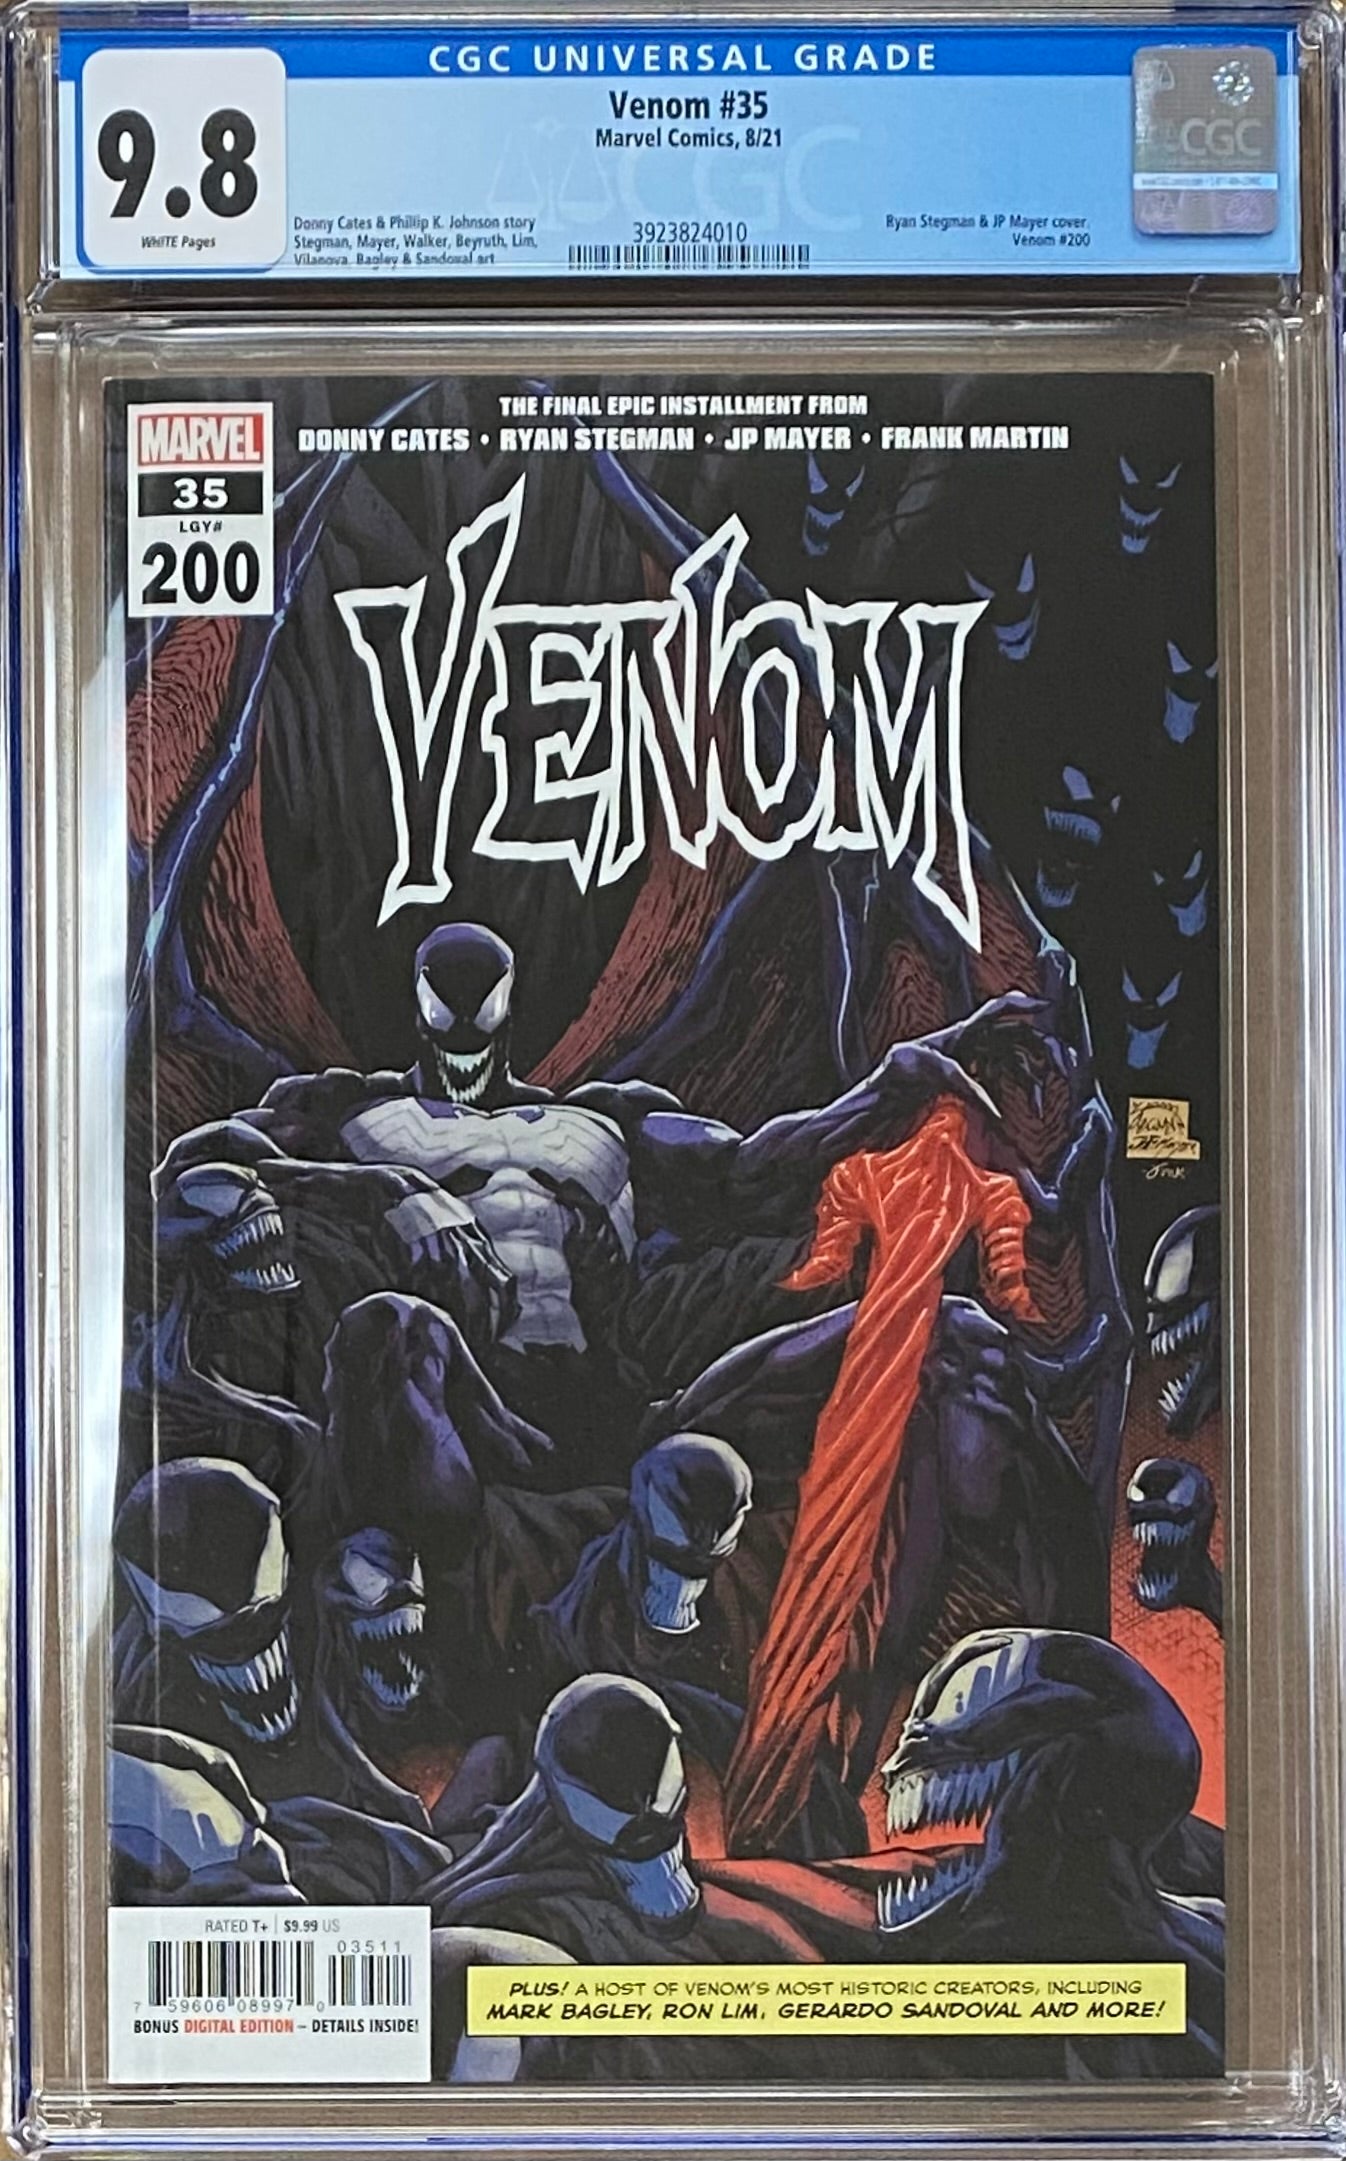 Venom #35 (#200) CGC 9.8